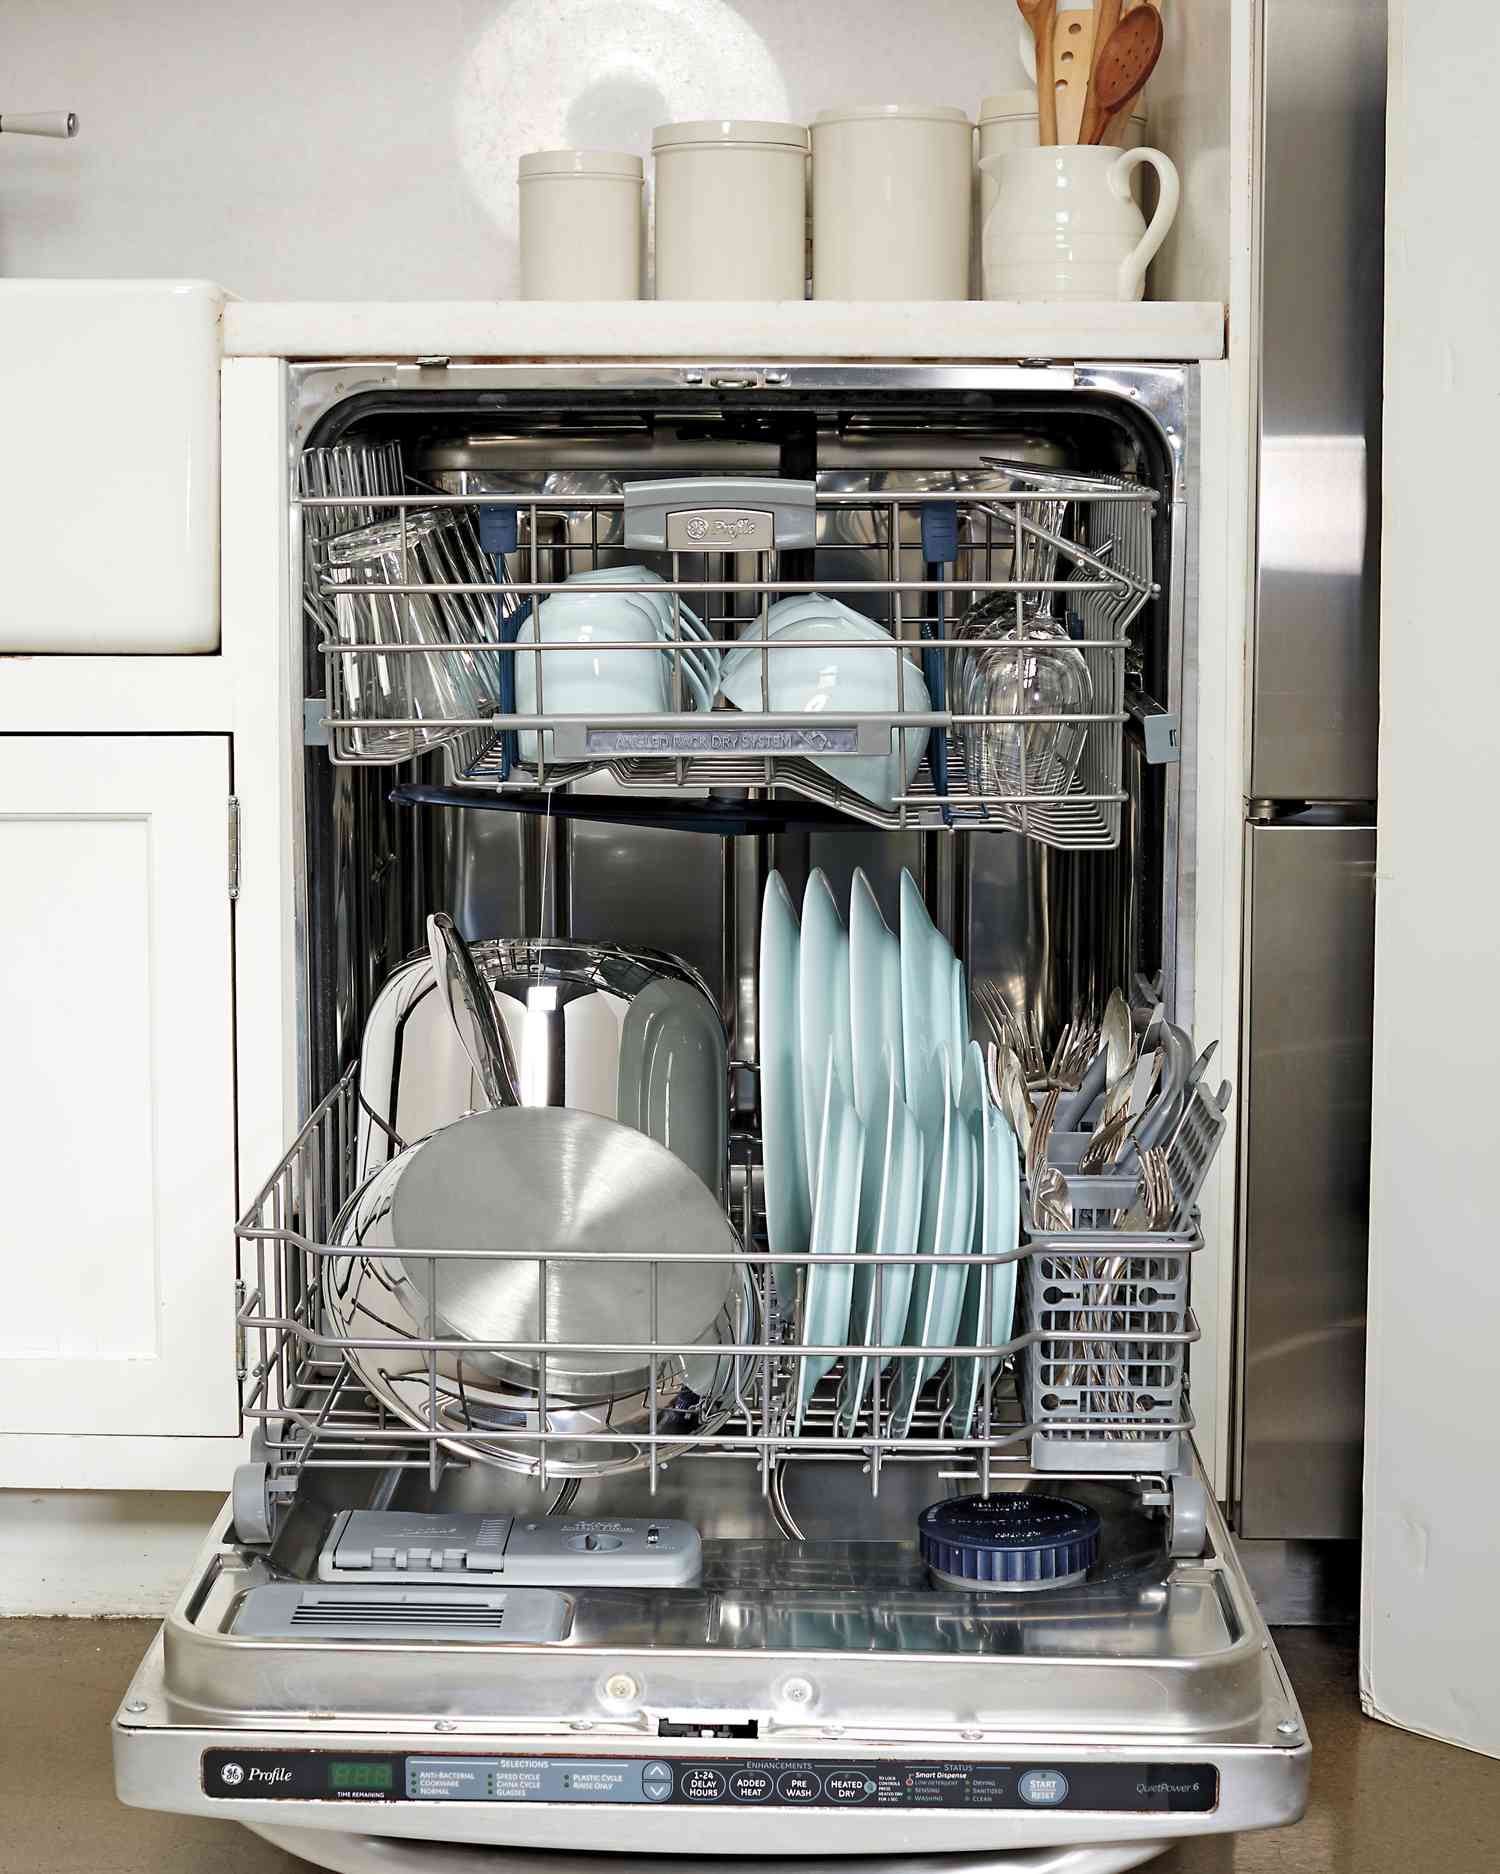 dishwasher-224-mld110766.jpg